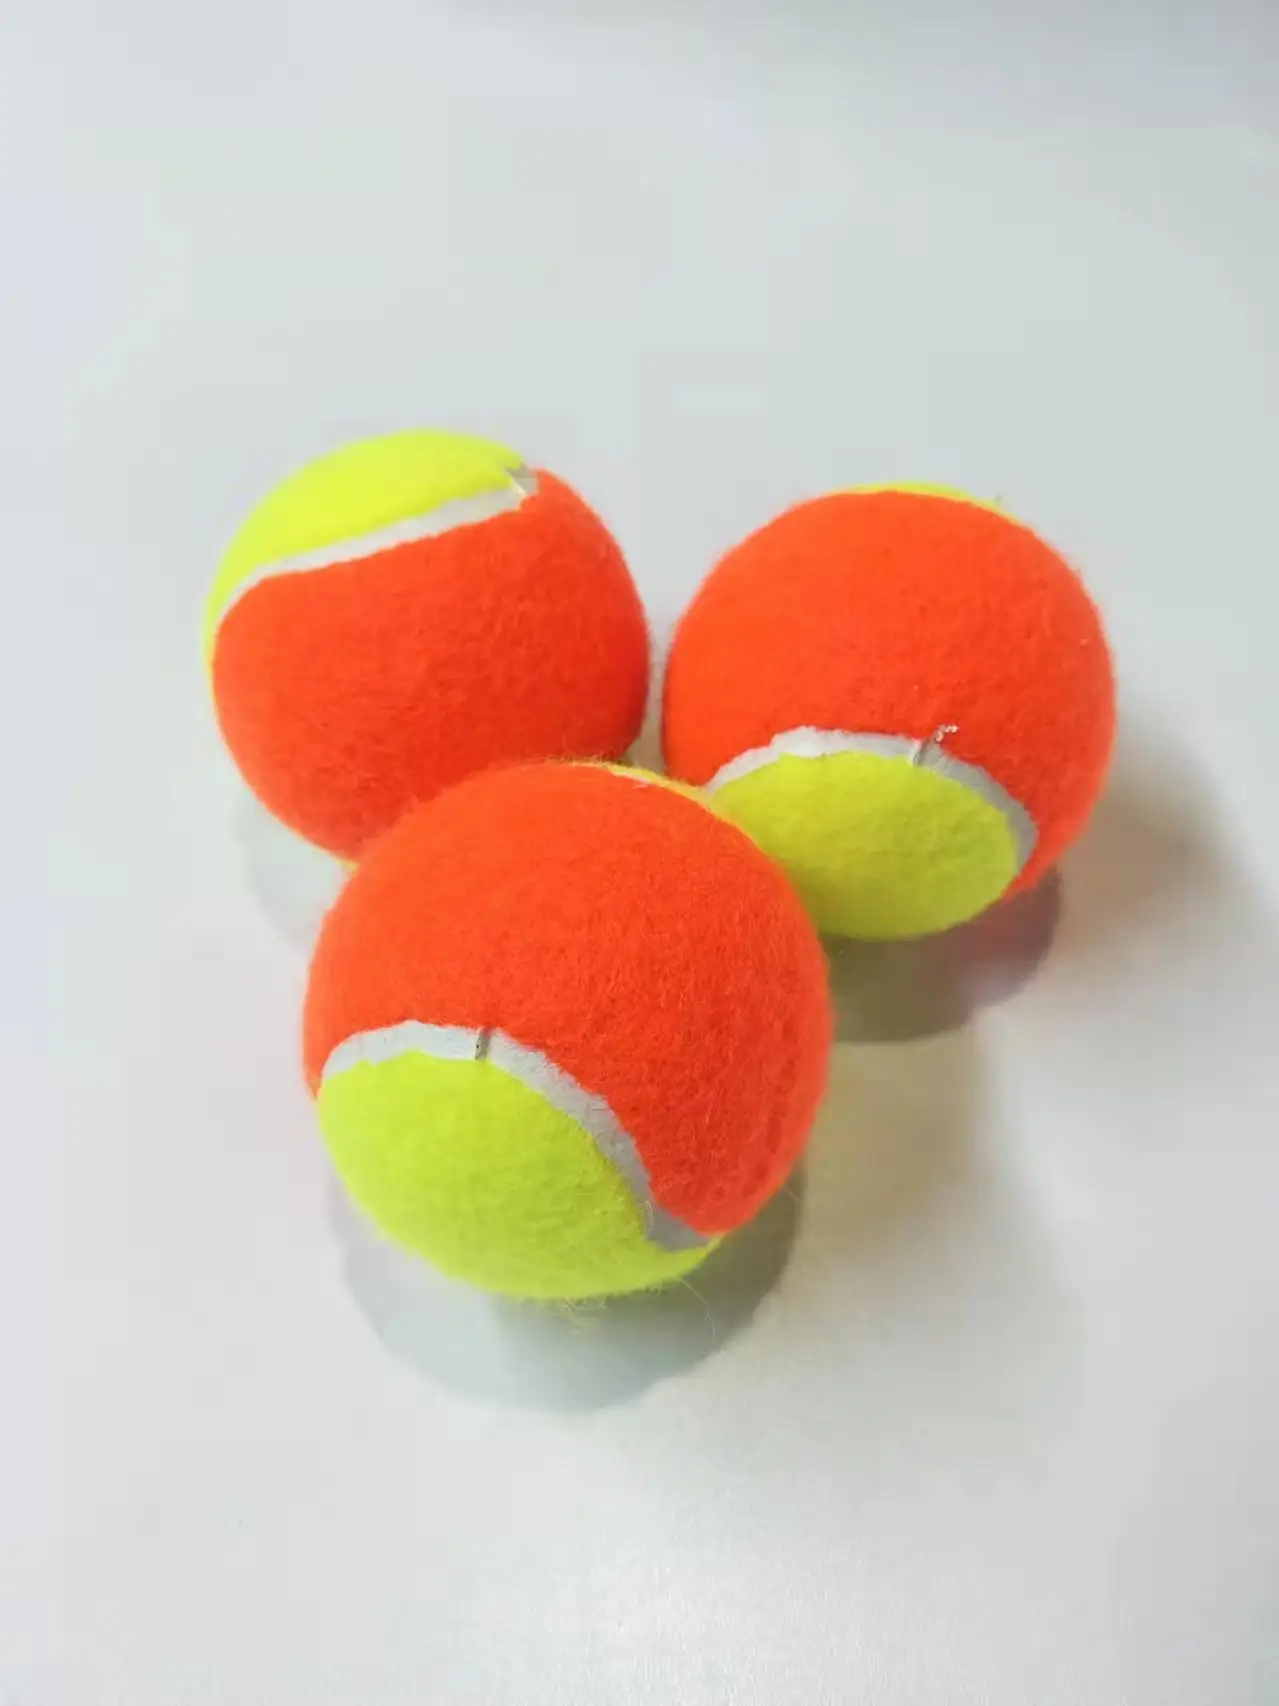 

Spot Soft Tennis Beach ball Tennis Beginner Youth audult Training Practice Racket Dedicated balls